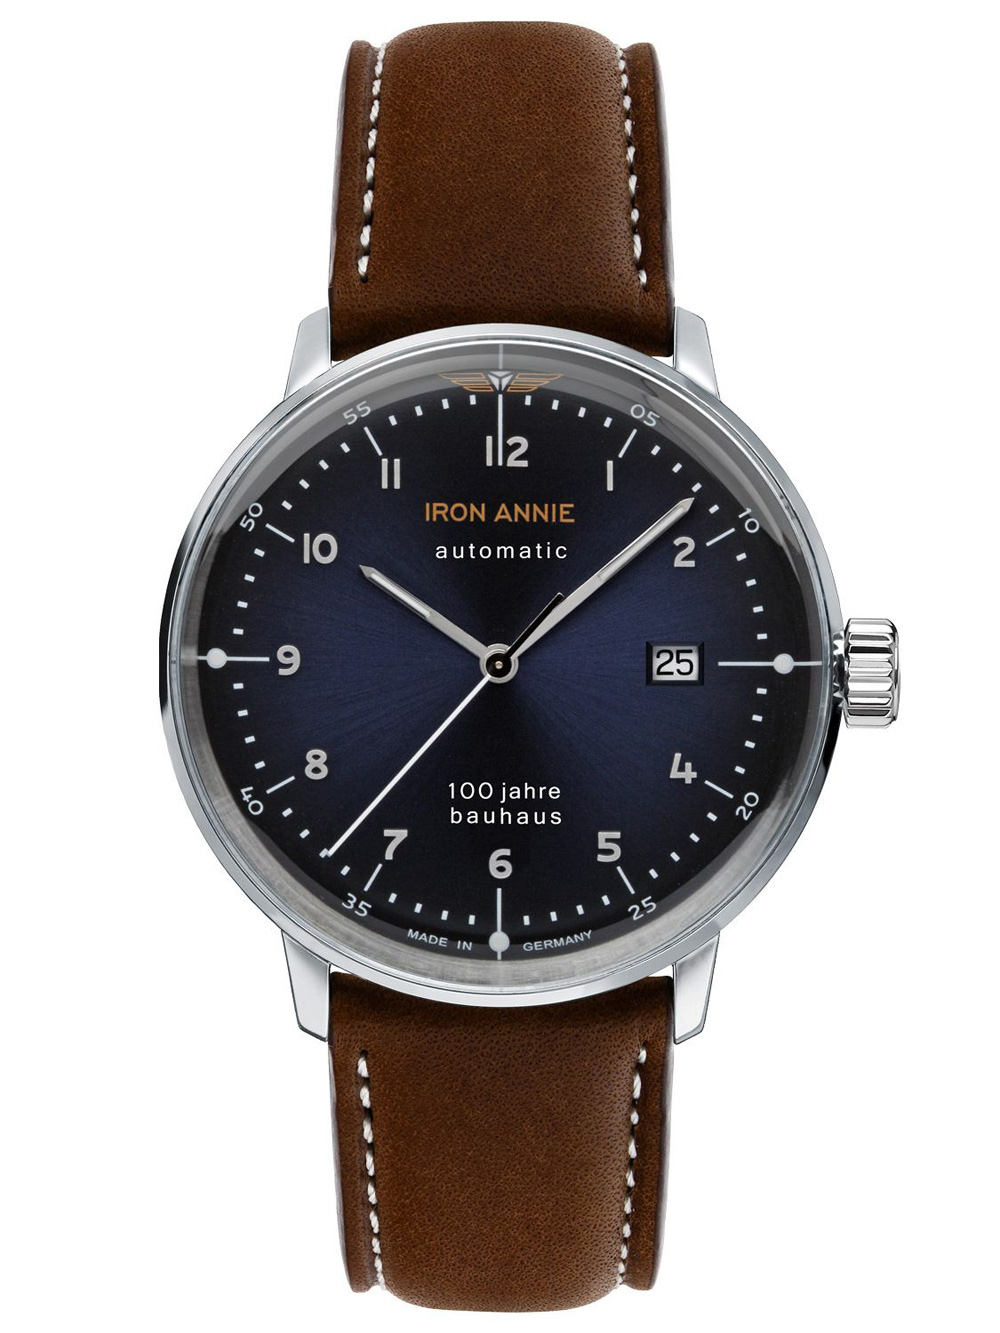 Pánské hodinky Iron Annie 5056-3 Bauhaus Automatic Men's 40mm 5ATM